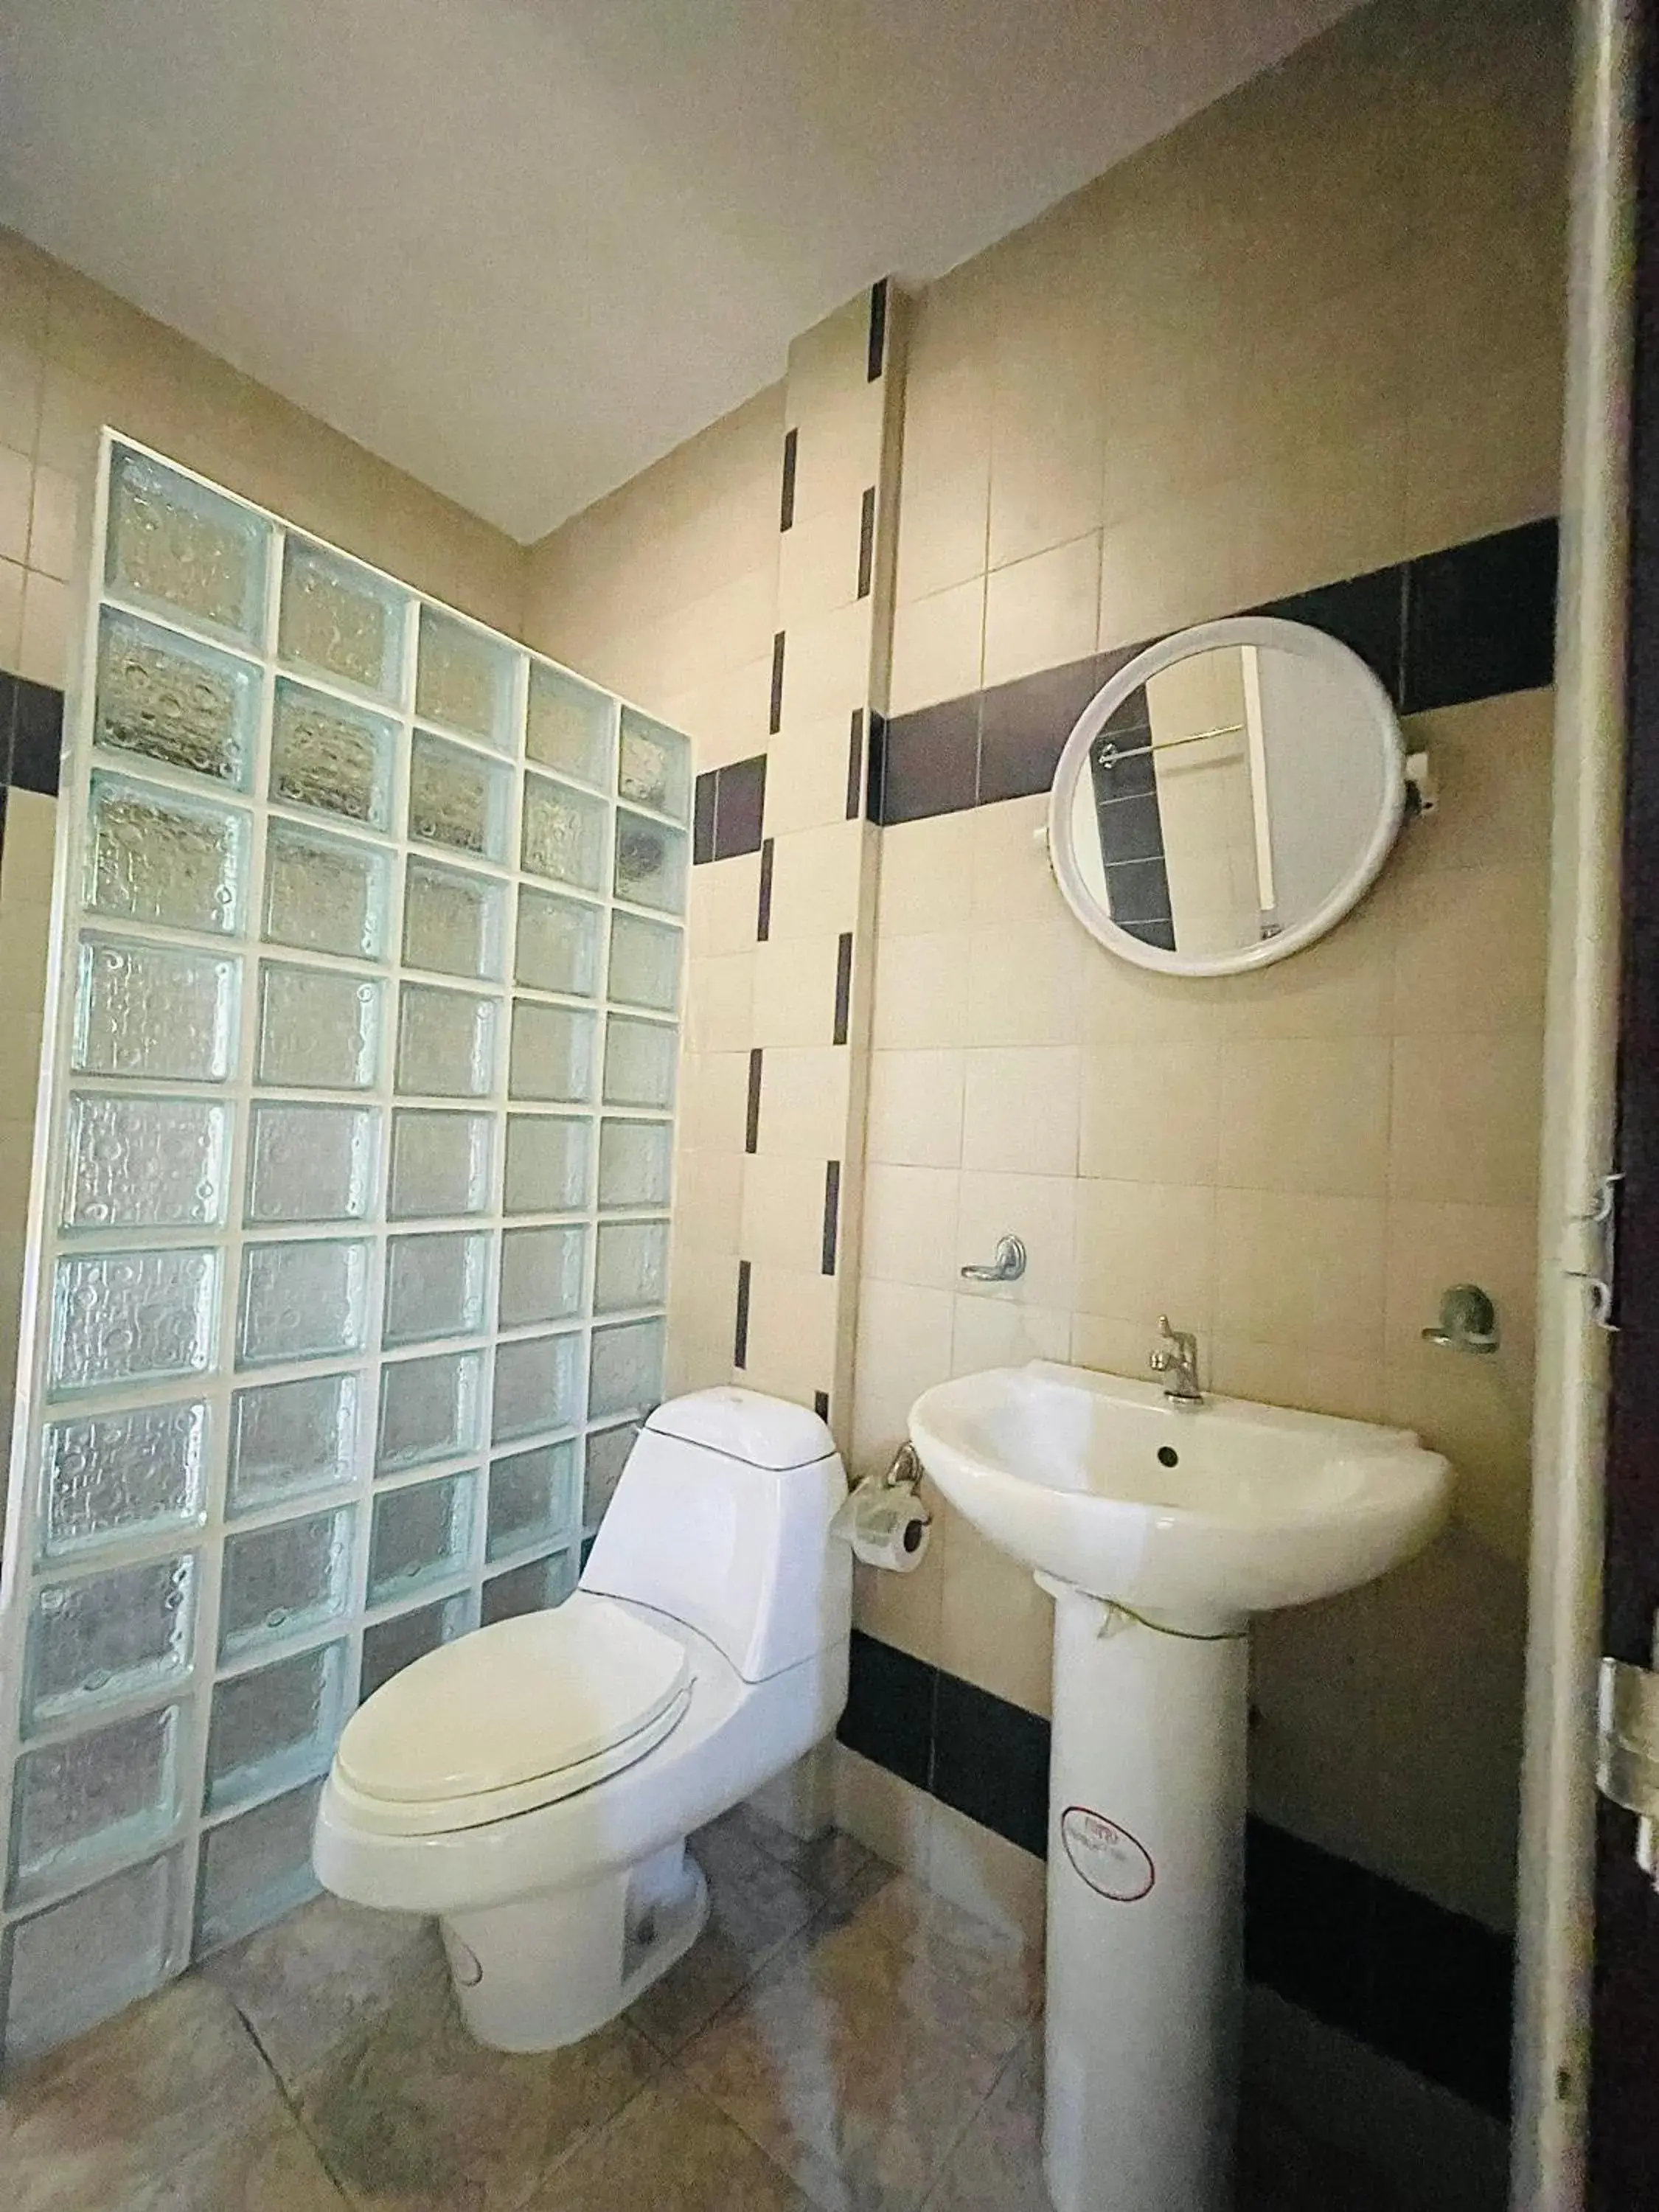 Toilet, Bathroom in Meewaya Hotel